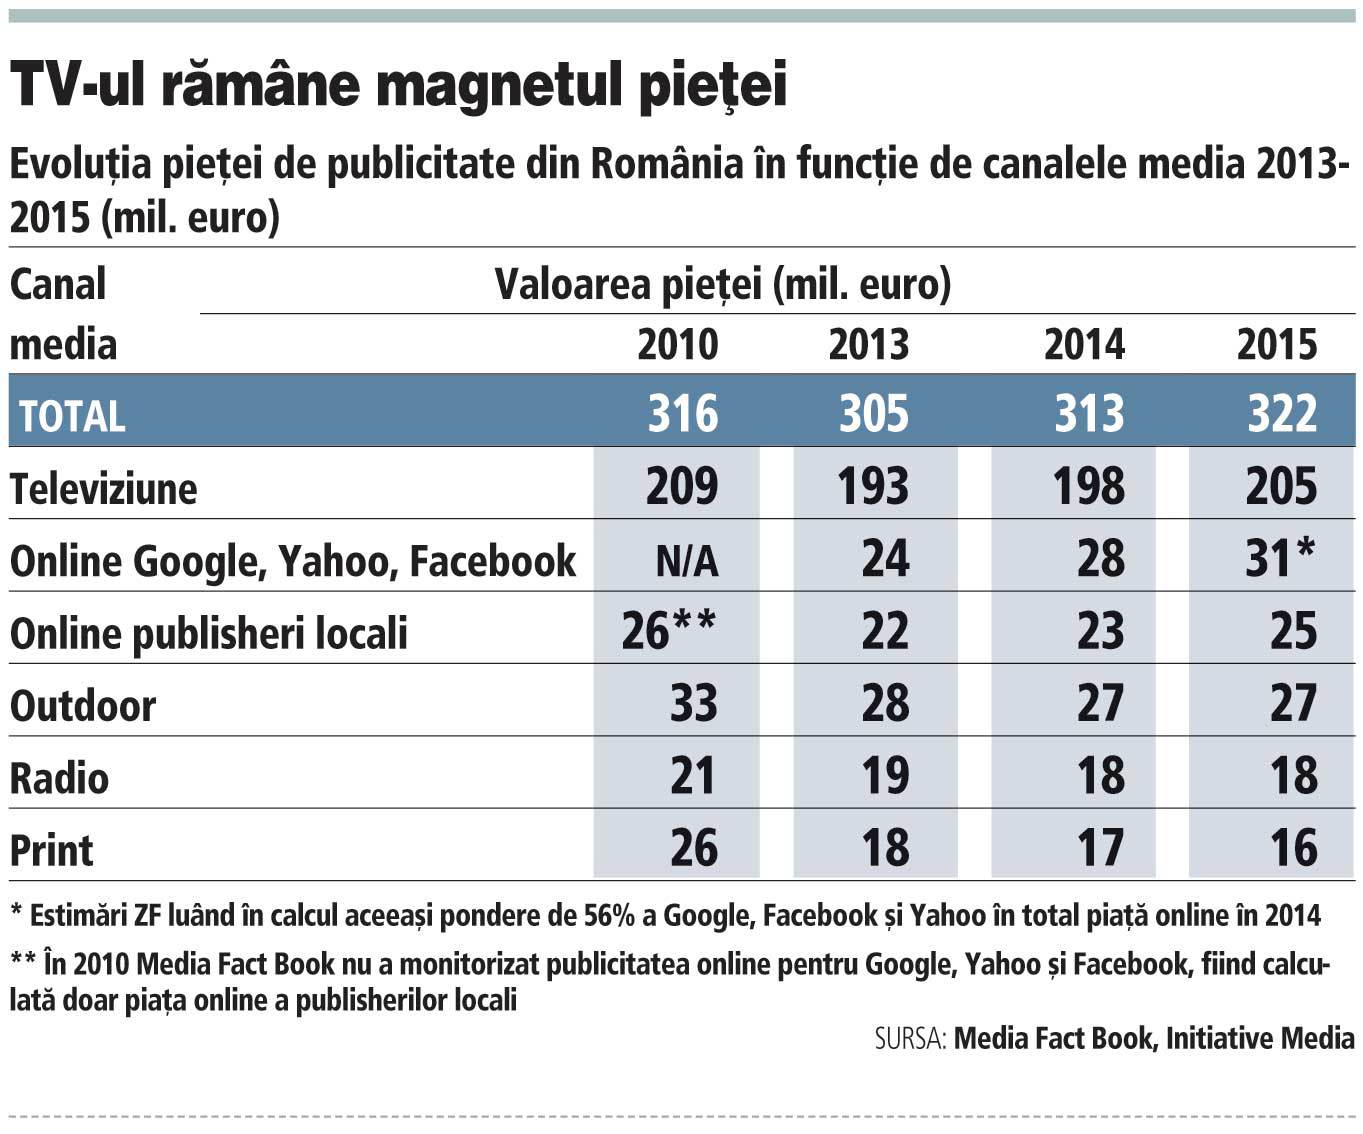 Creşterea pieţei de publicitate online pentru publisherii locali, de cinci ani o „fata morgana“. În 2010 piaţa era de 26 mil. euro, astăzi este la 25 mil. euro